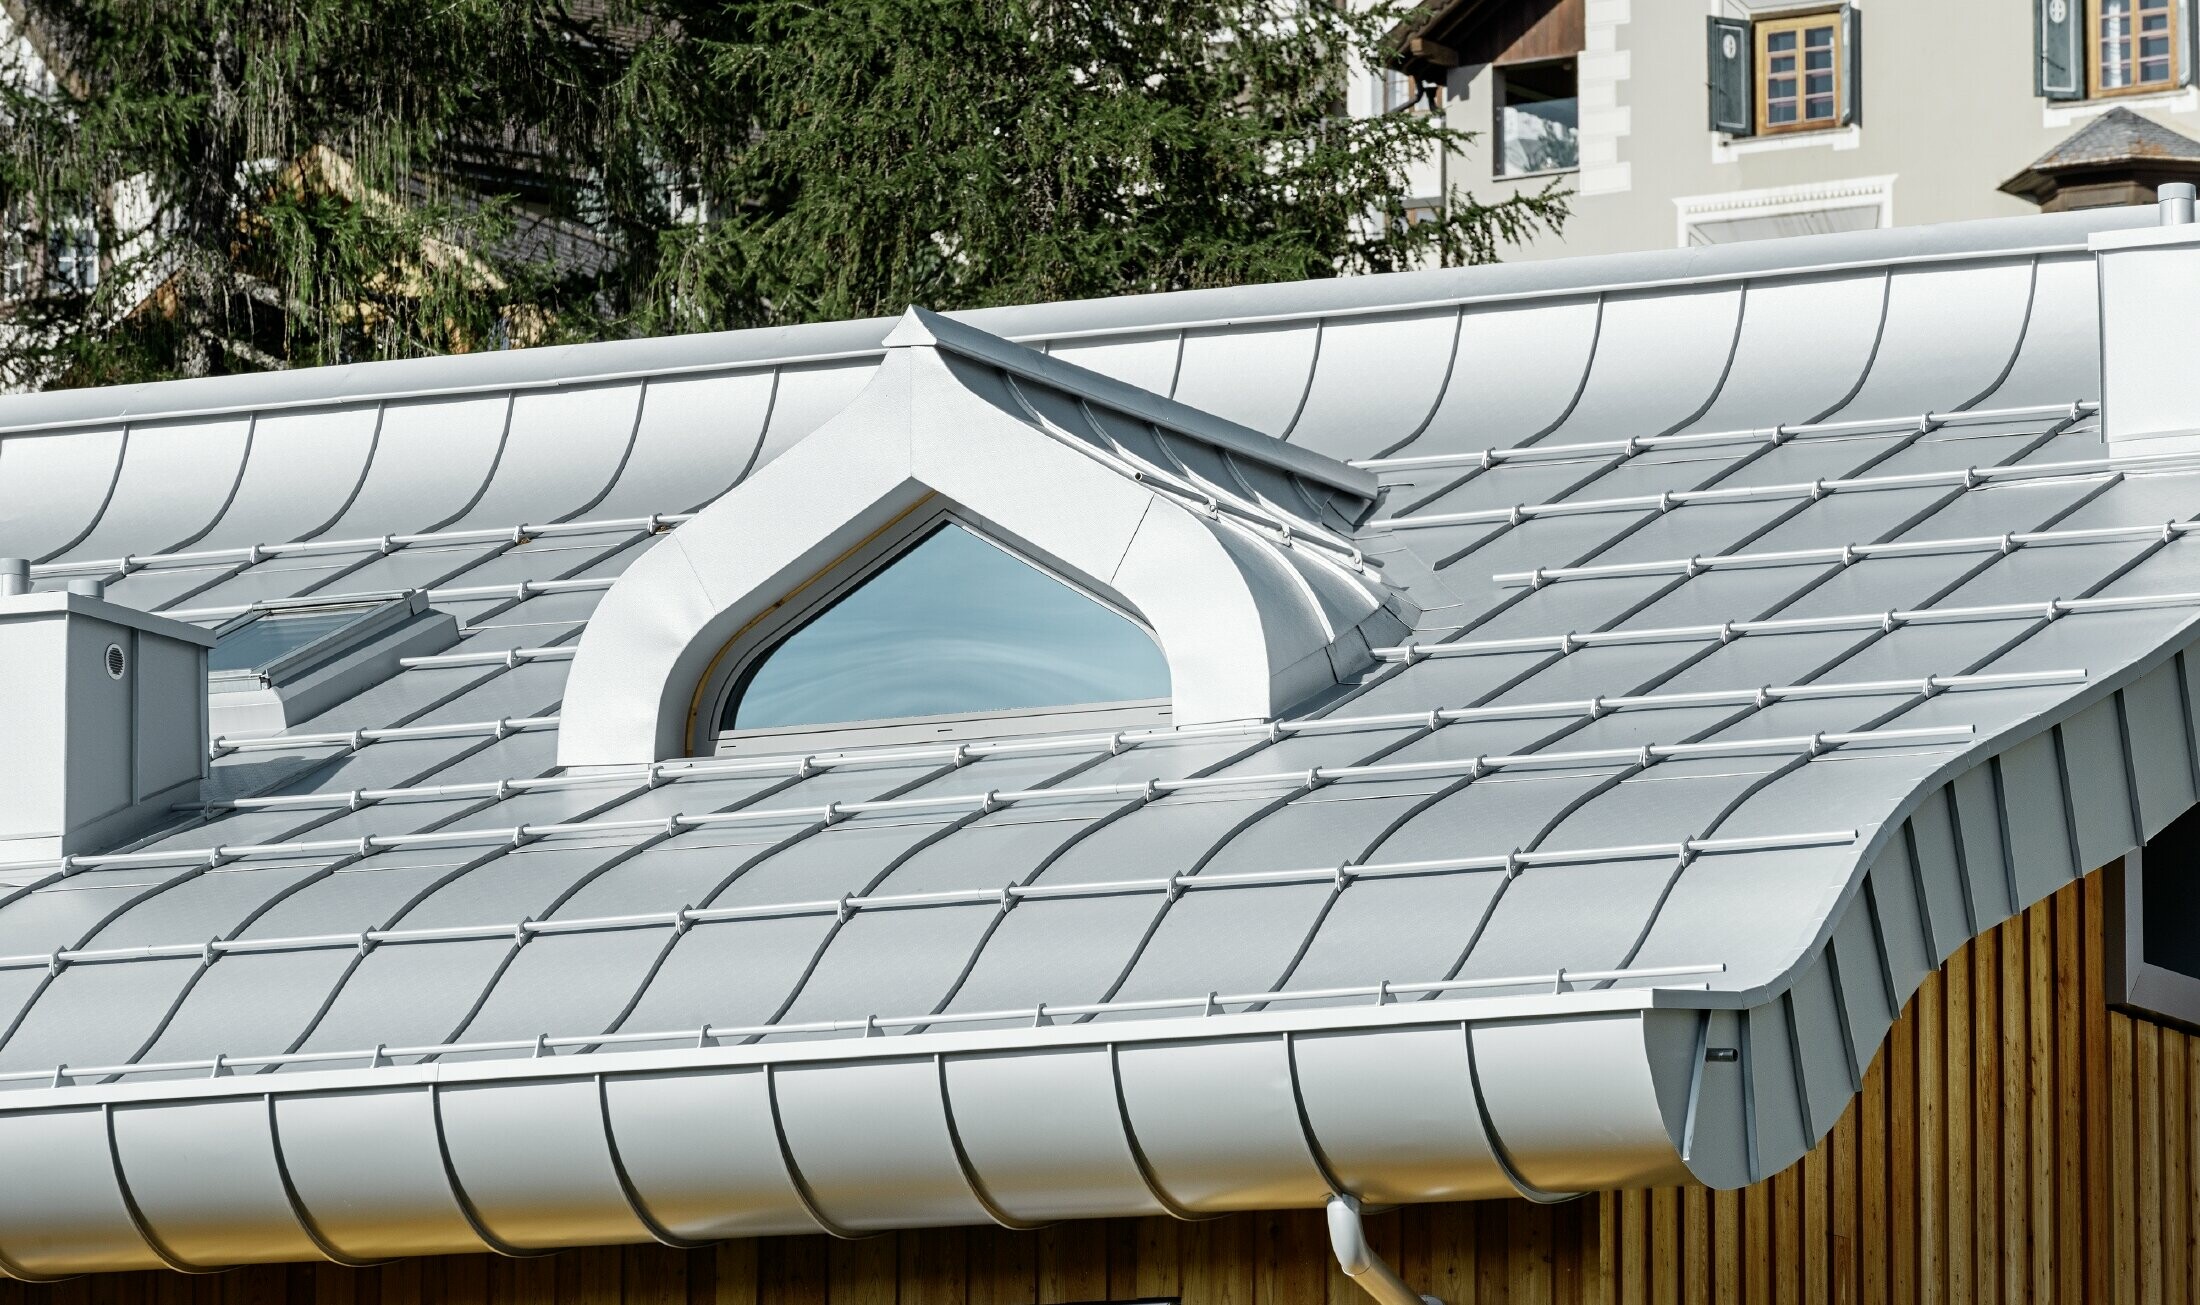 Stambeno naselje u St. Moritzu s drvenom fasadom i aluminijskim krovom s lučnom strehom u srebrnoj metalik boji